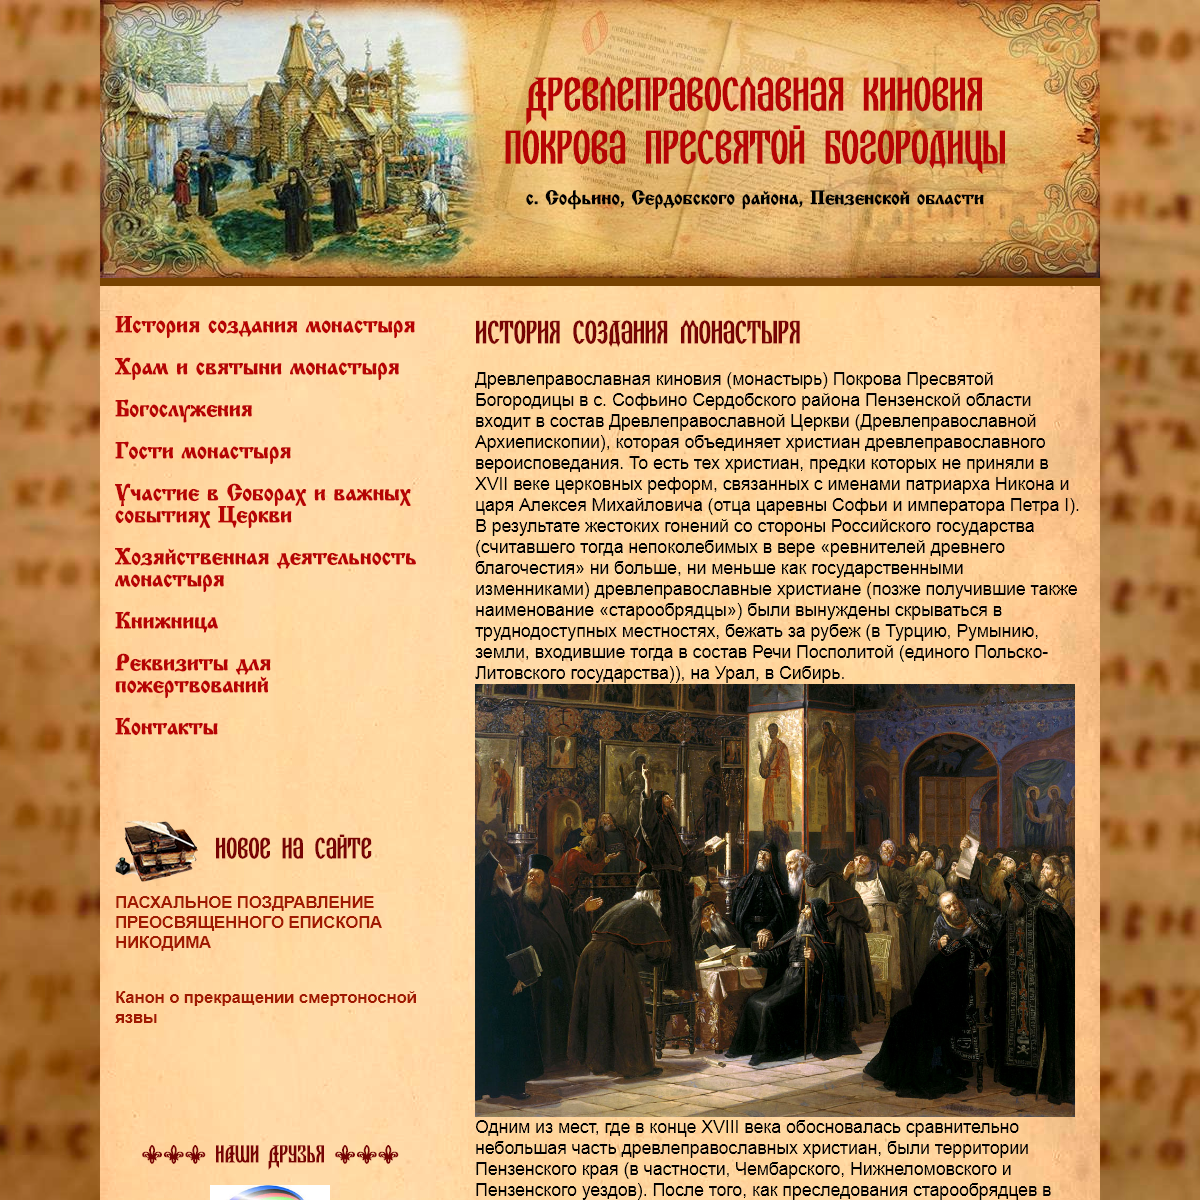 A complete backup of sofiino-a-o-monastery.ru